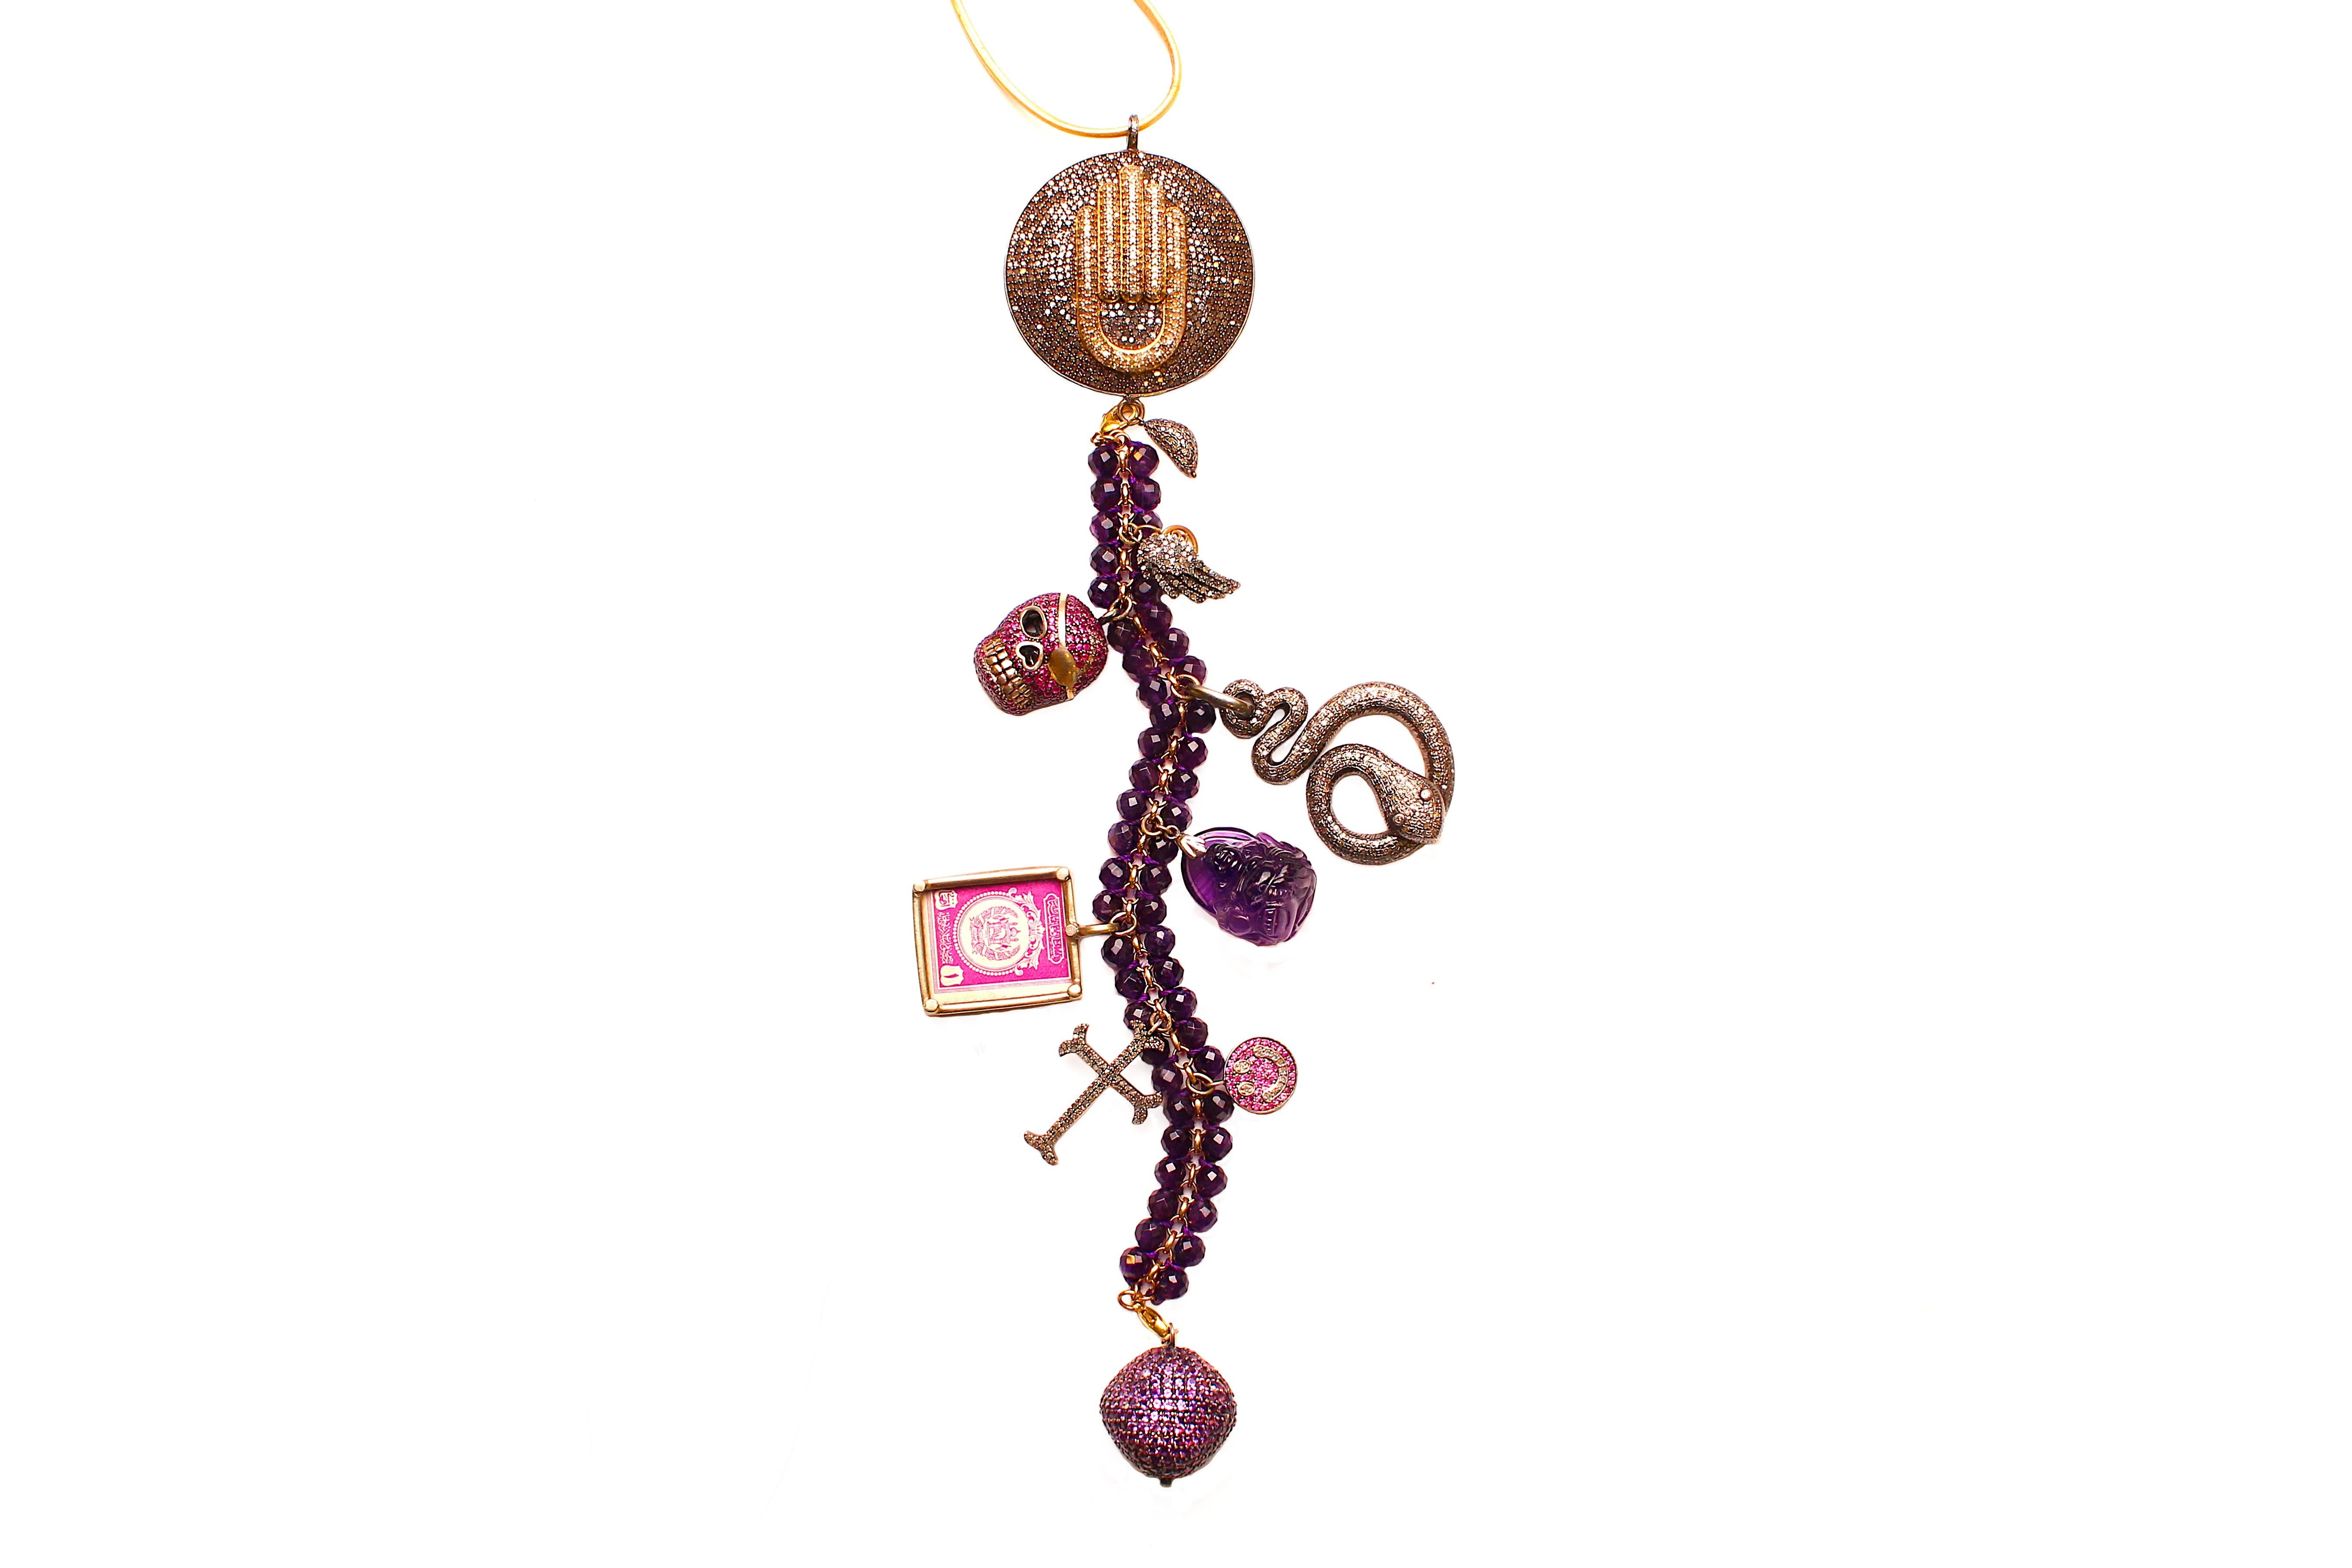 Contemporary Clarissa Bronfman Diamond, Amethyst, Ruby 'Voo Doo' Symbol Tree Necklace